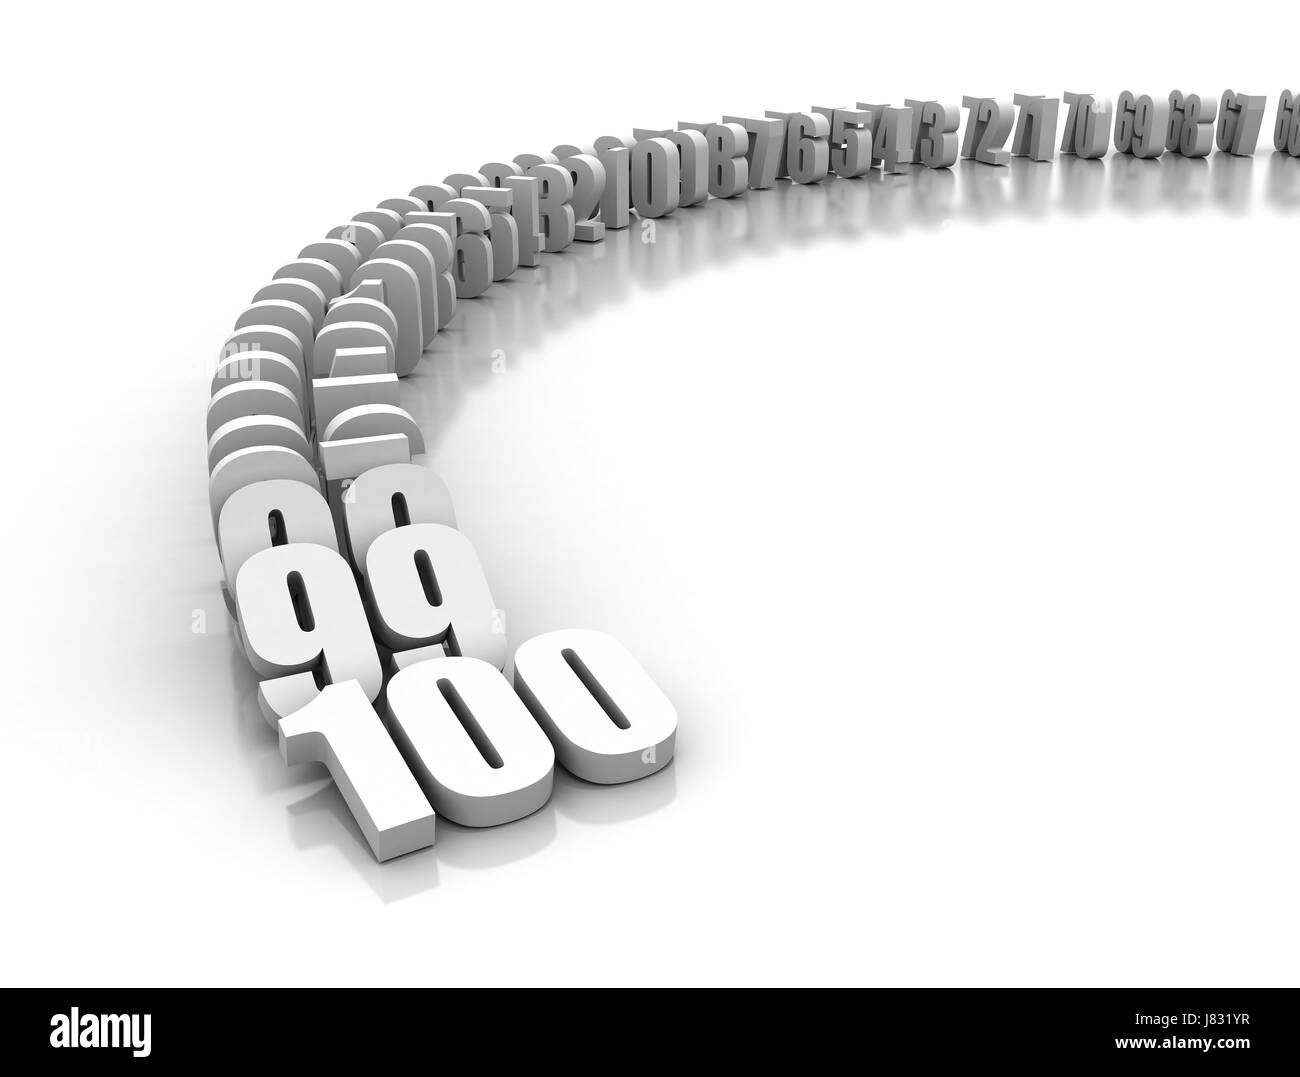 Modello Progetto di design concept bozza del piano di contare i numeri di domino oggetti isolati Foto Stock